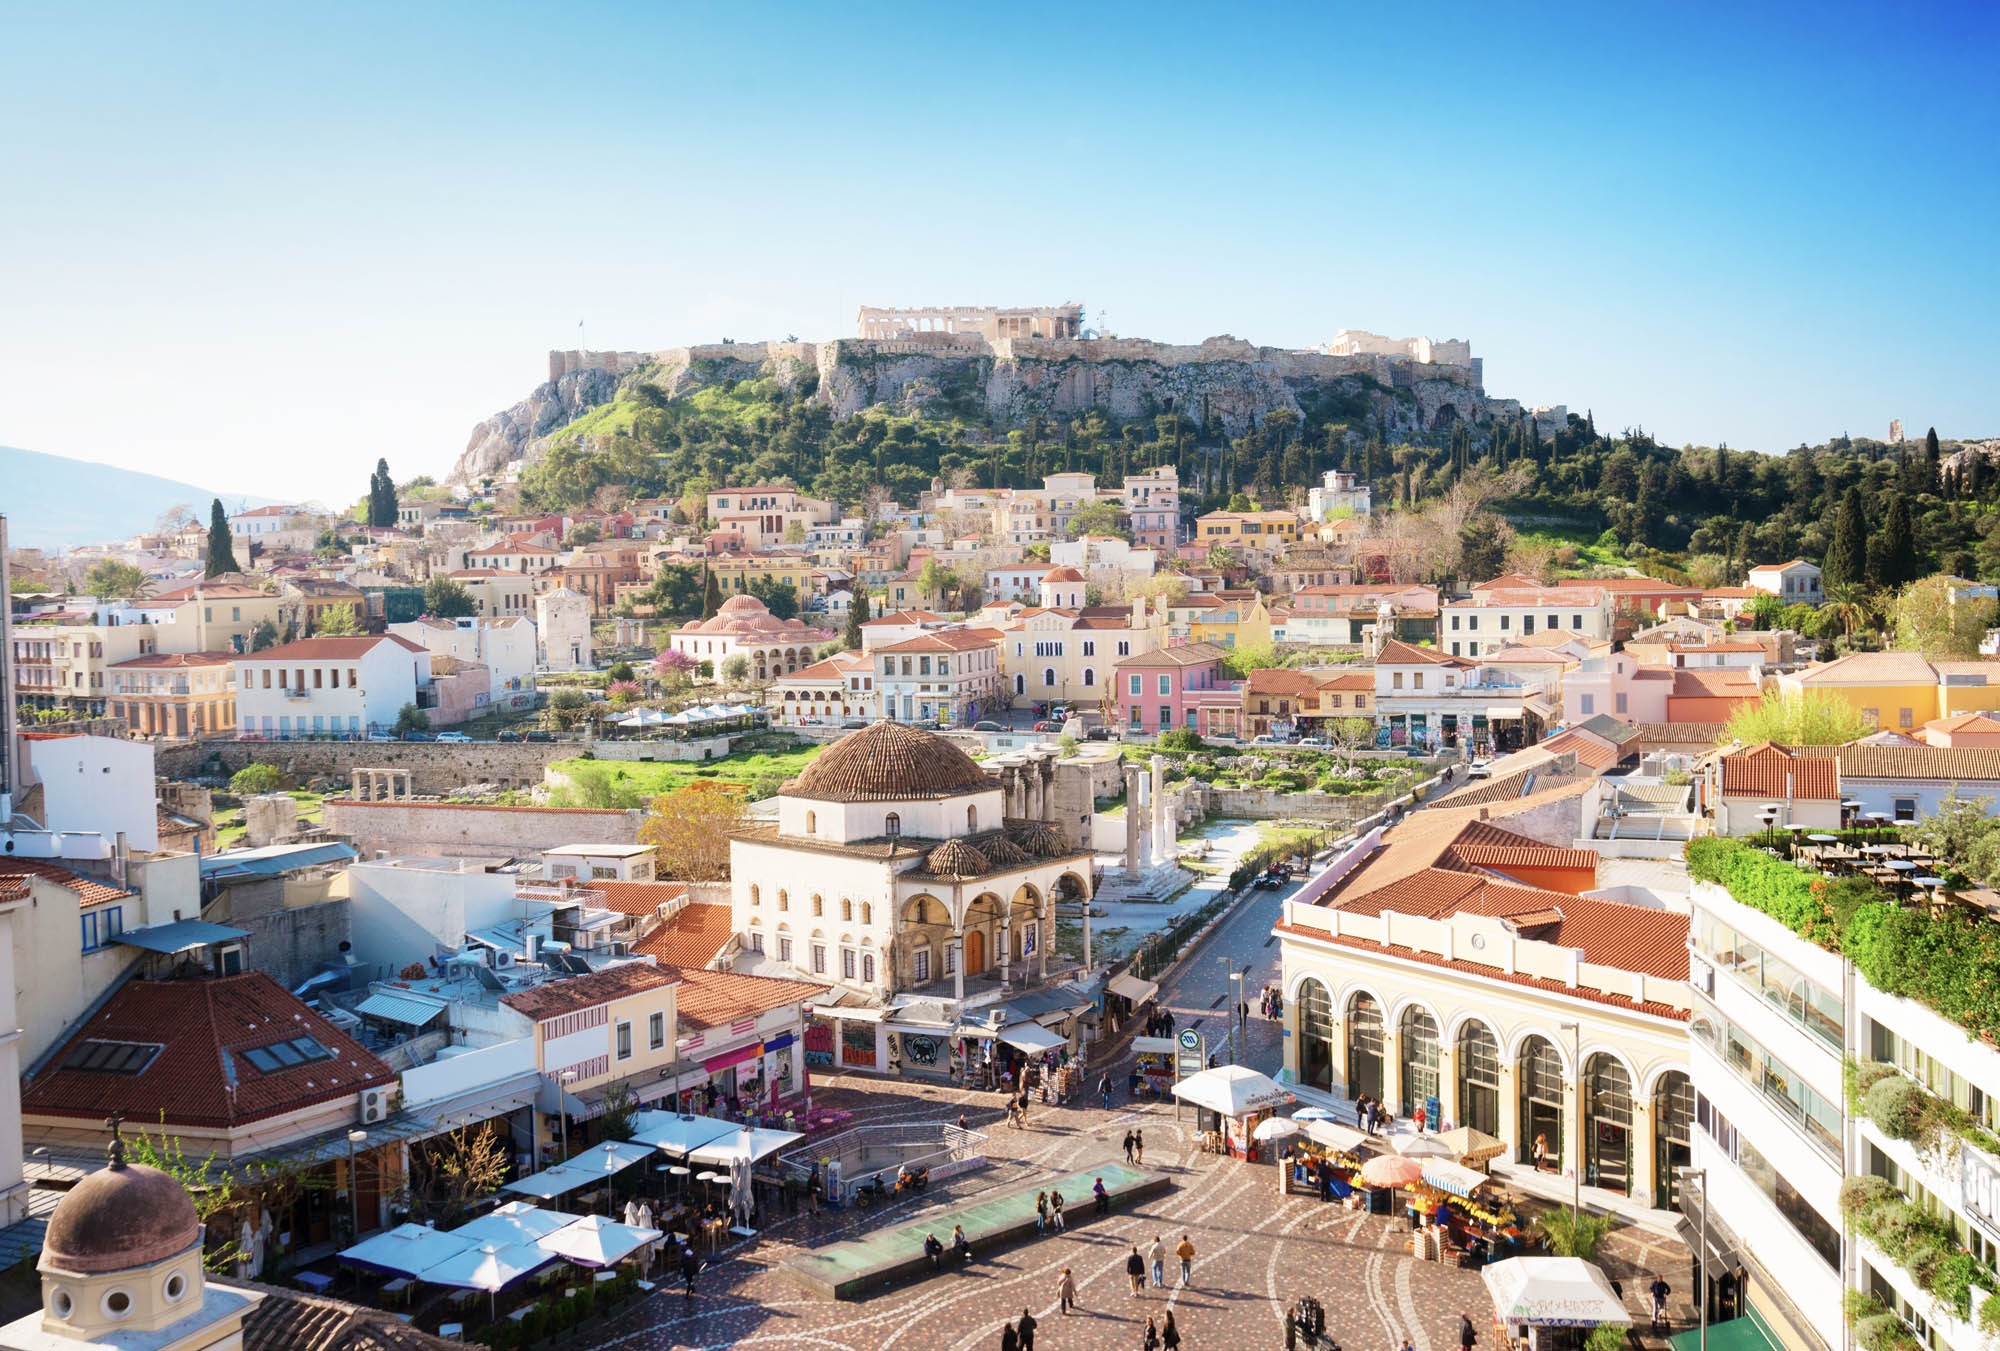 widok na centrum aten wraz z widokiem na acropol, piekna panorama miasta widziana z daleka